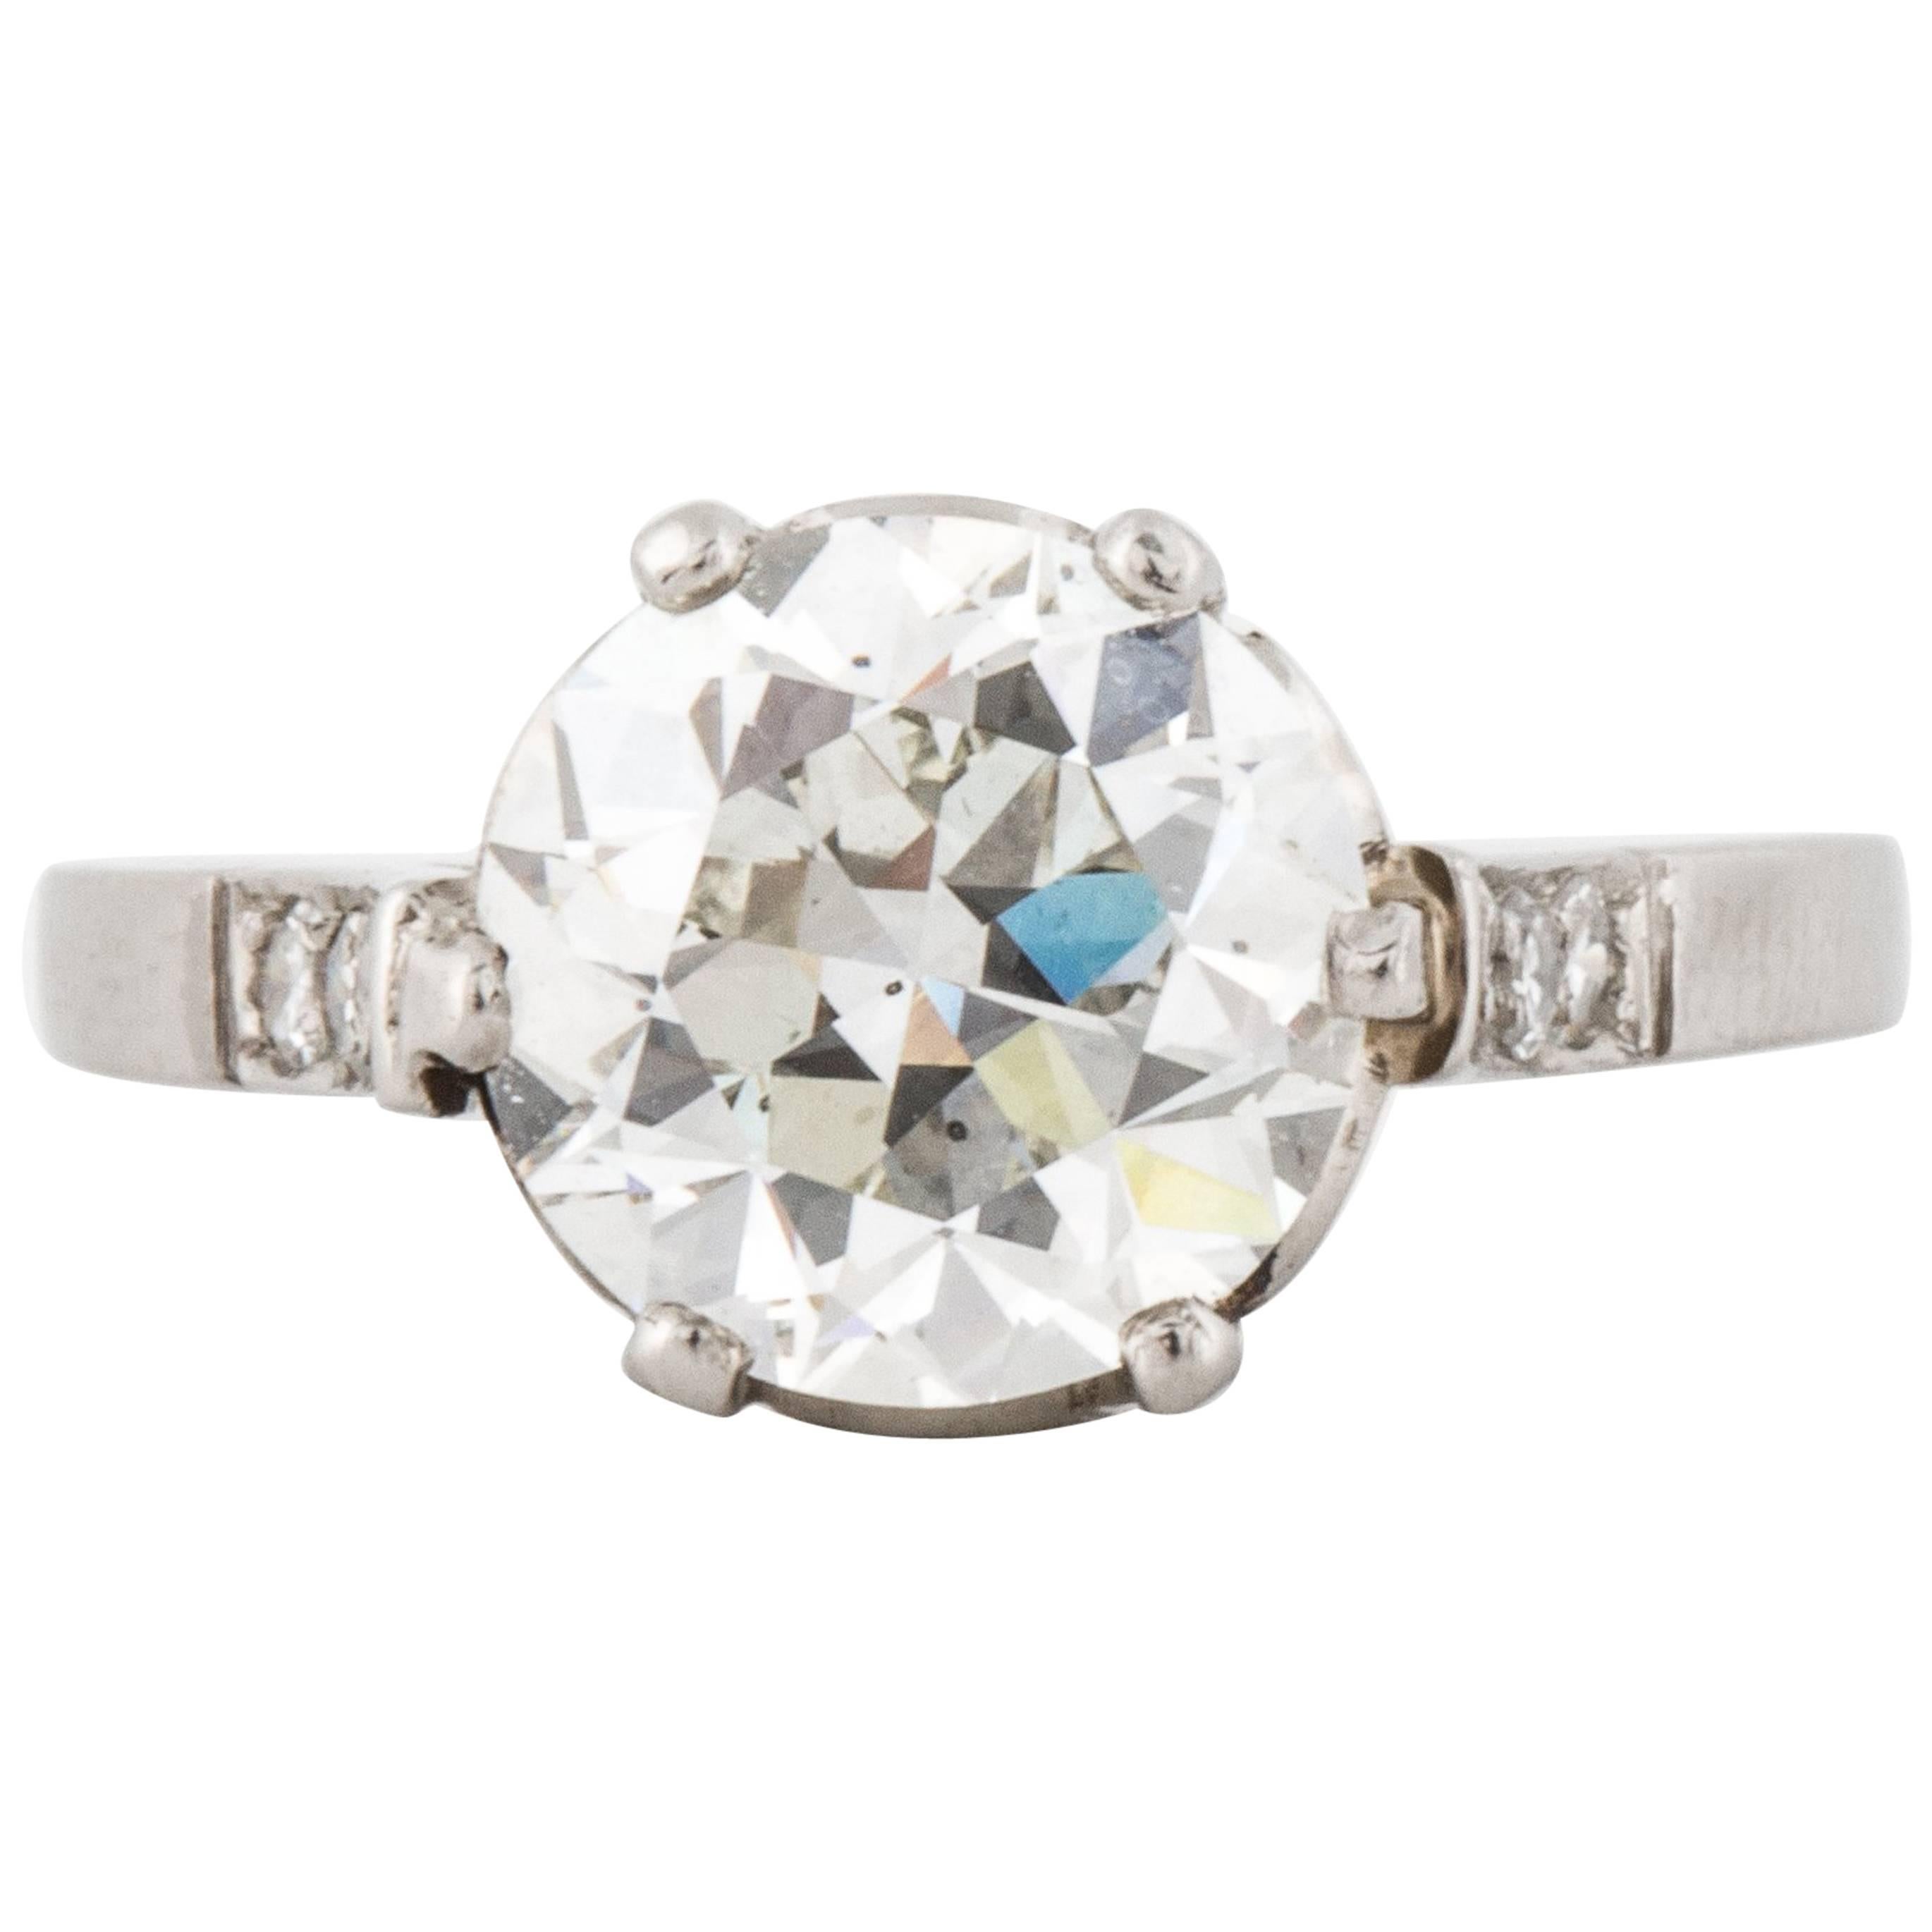 GIA Certified 2.66 Carat Old European-Cut Diamond Engagement Ring